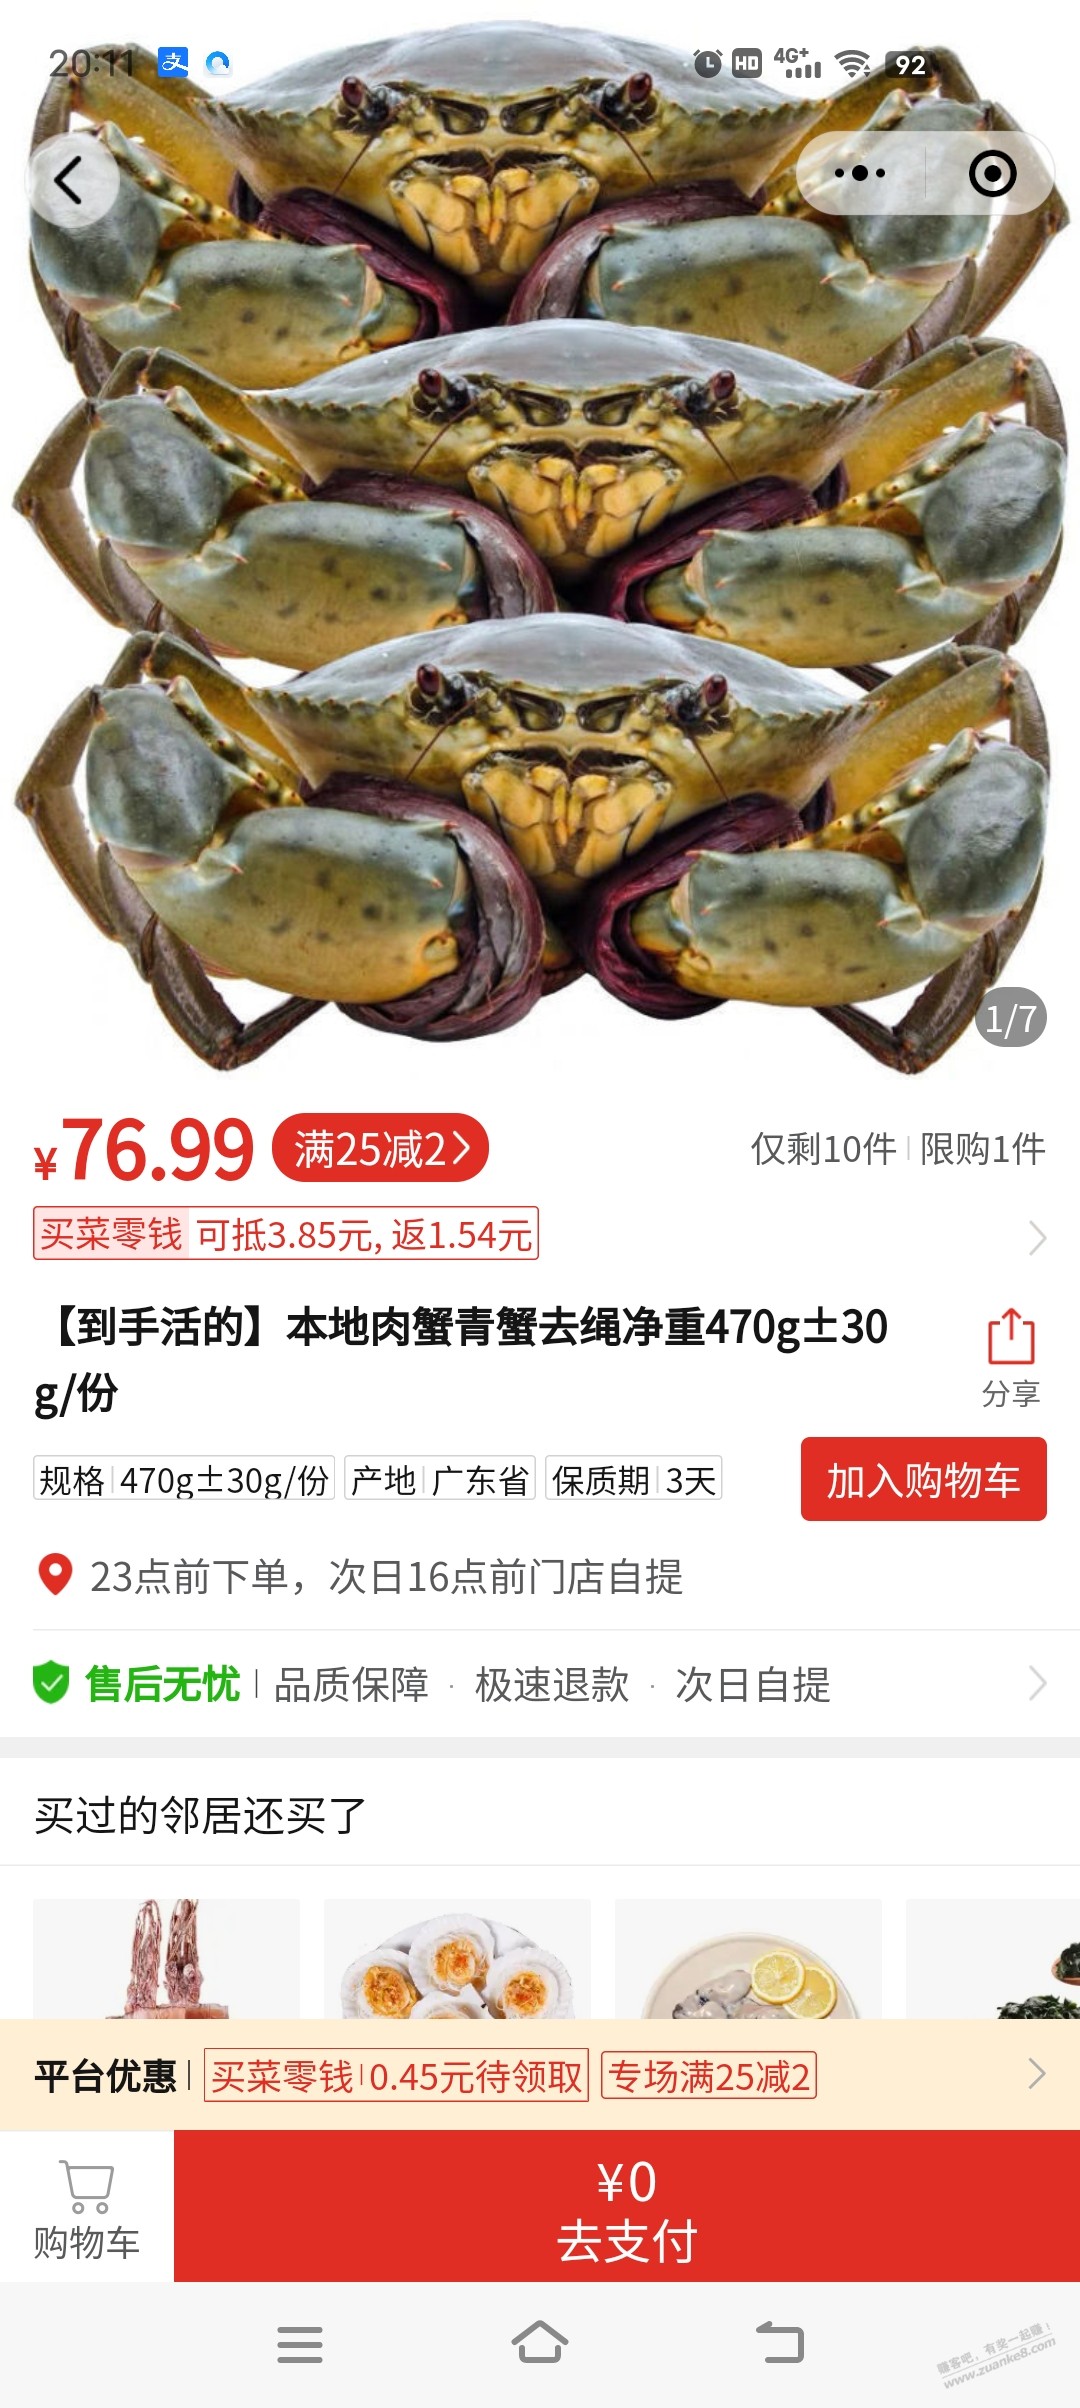 本地的螃蟹价格有点吓人。